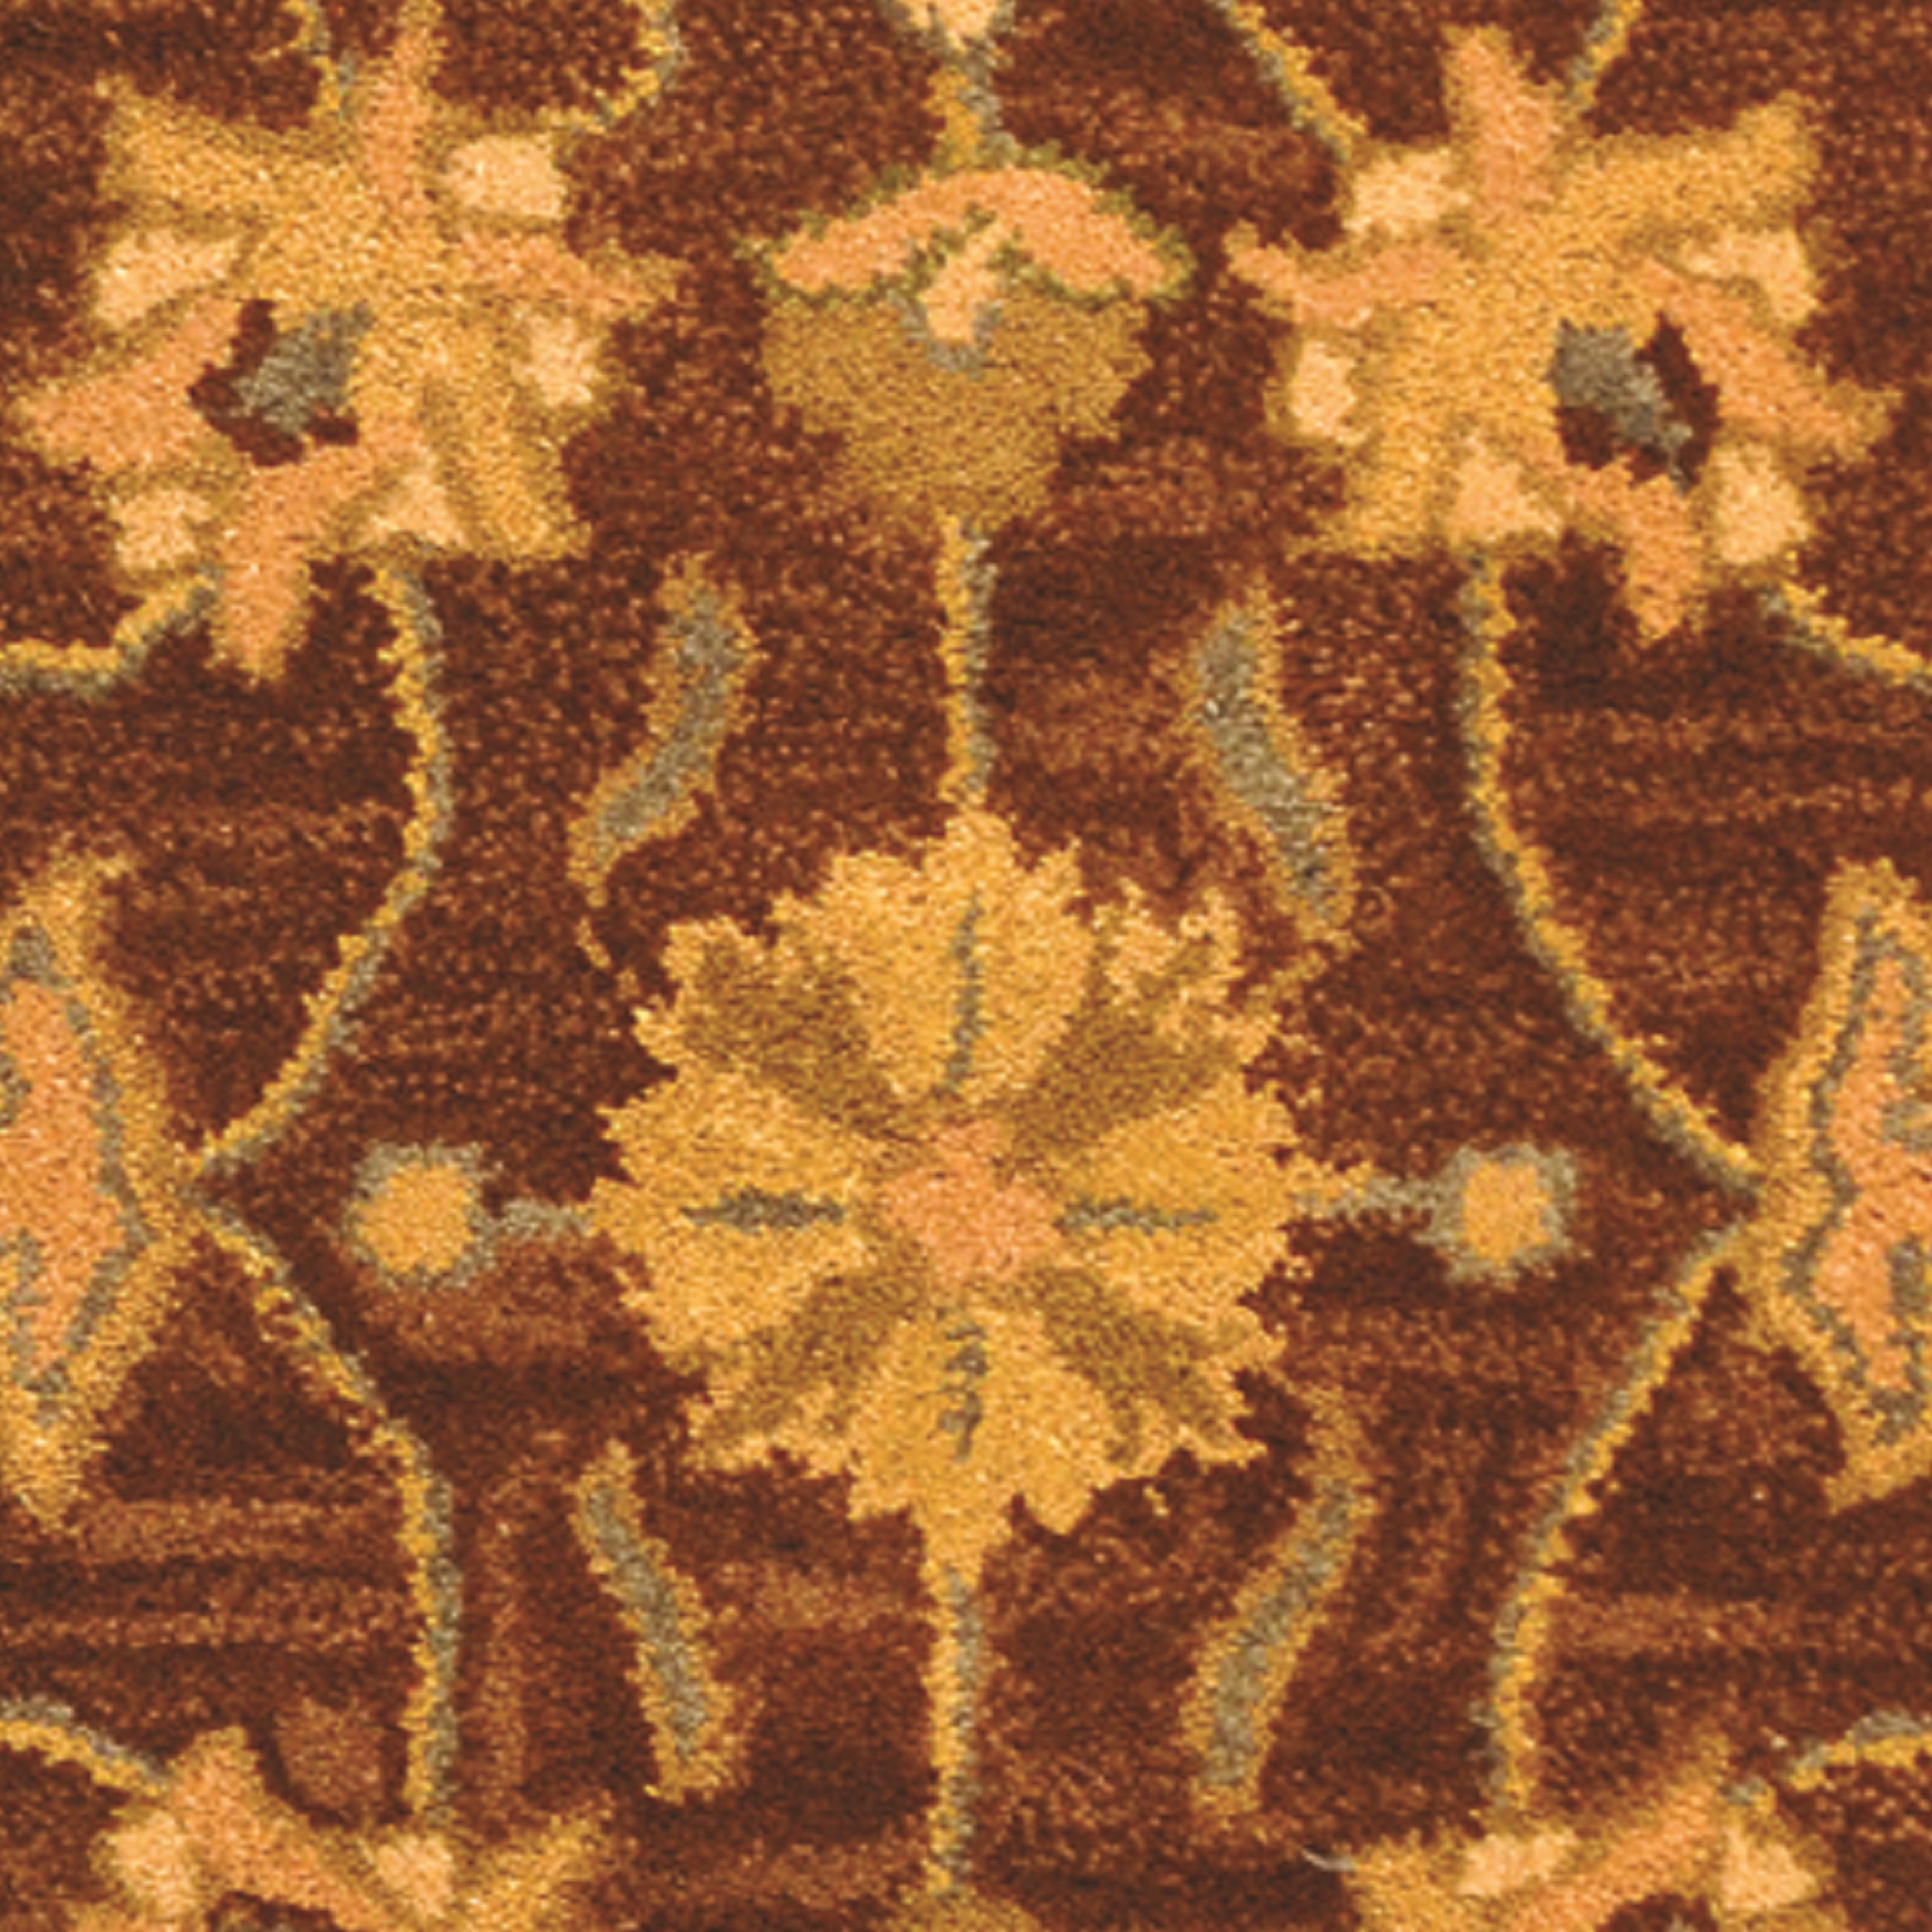 SAFAVIEH Heritage Regis Traditional Wool Runner Rug, Brown/Blue, 2'3" x 10' - image 3 of 4